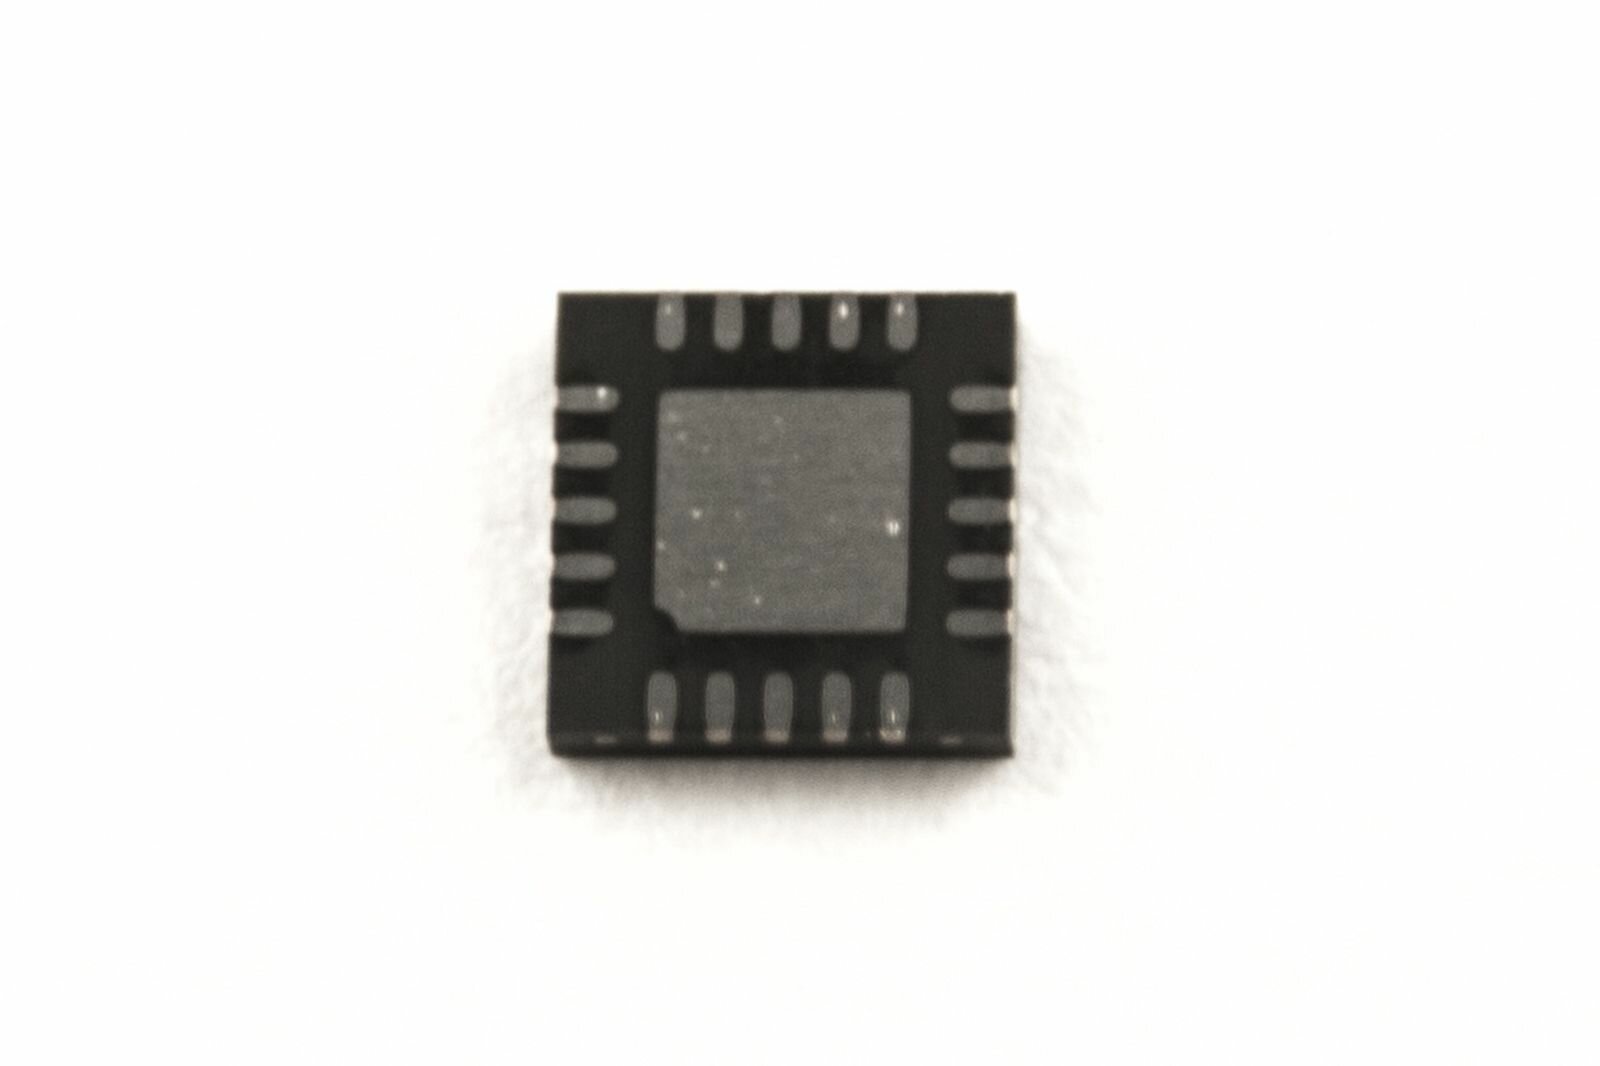 Микросхема SN75LVCP601RTJT